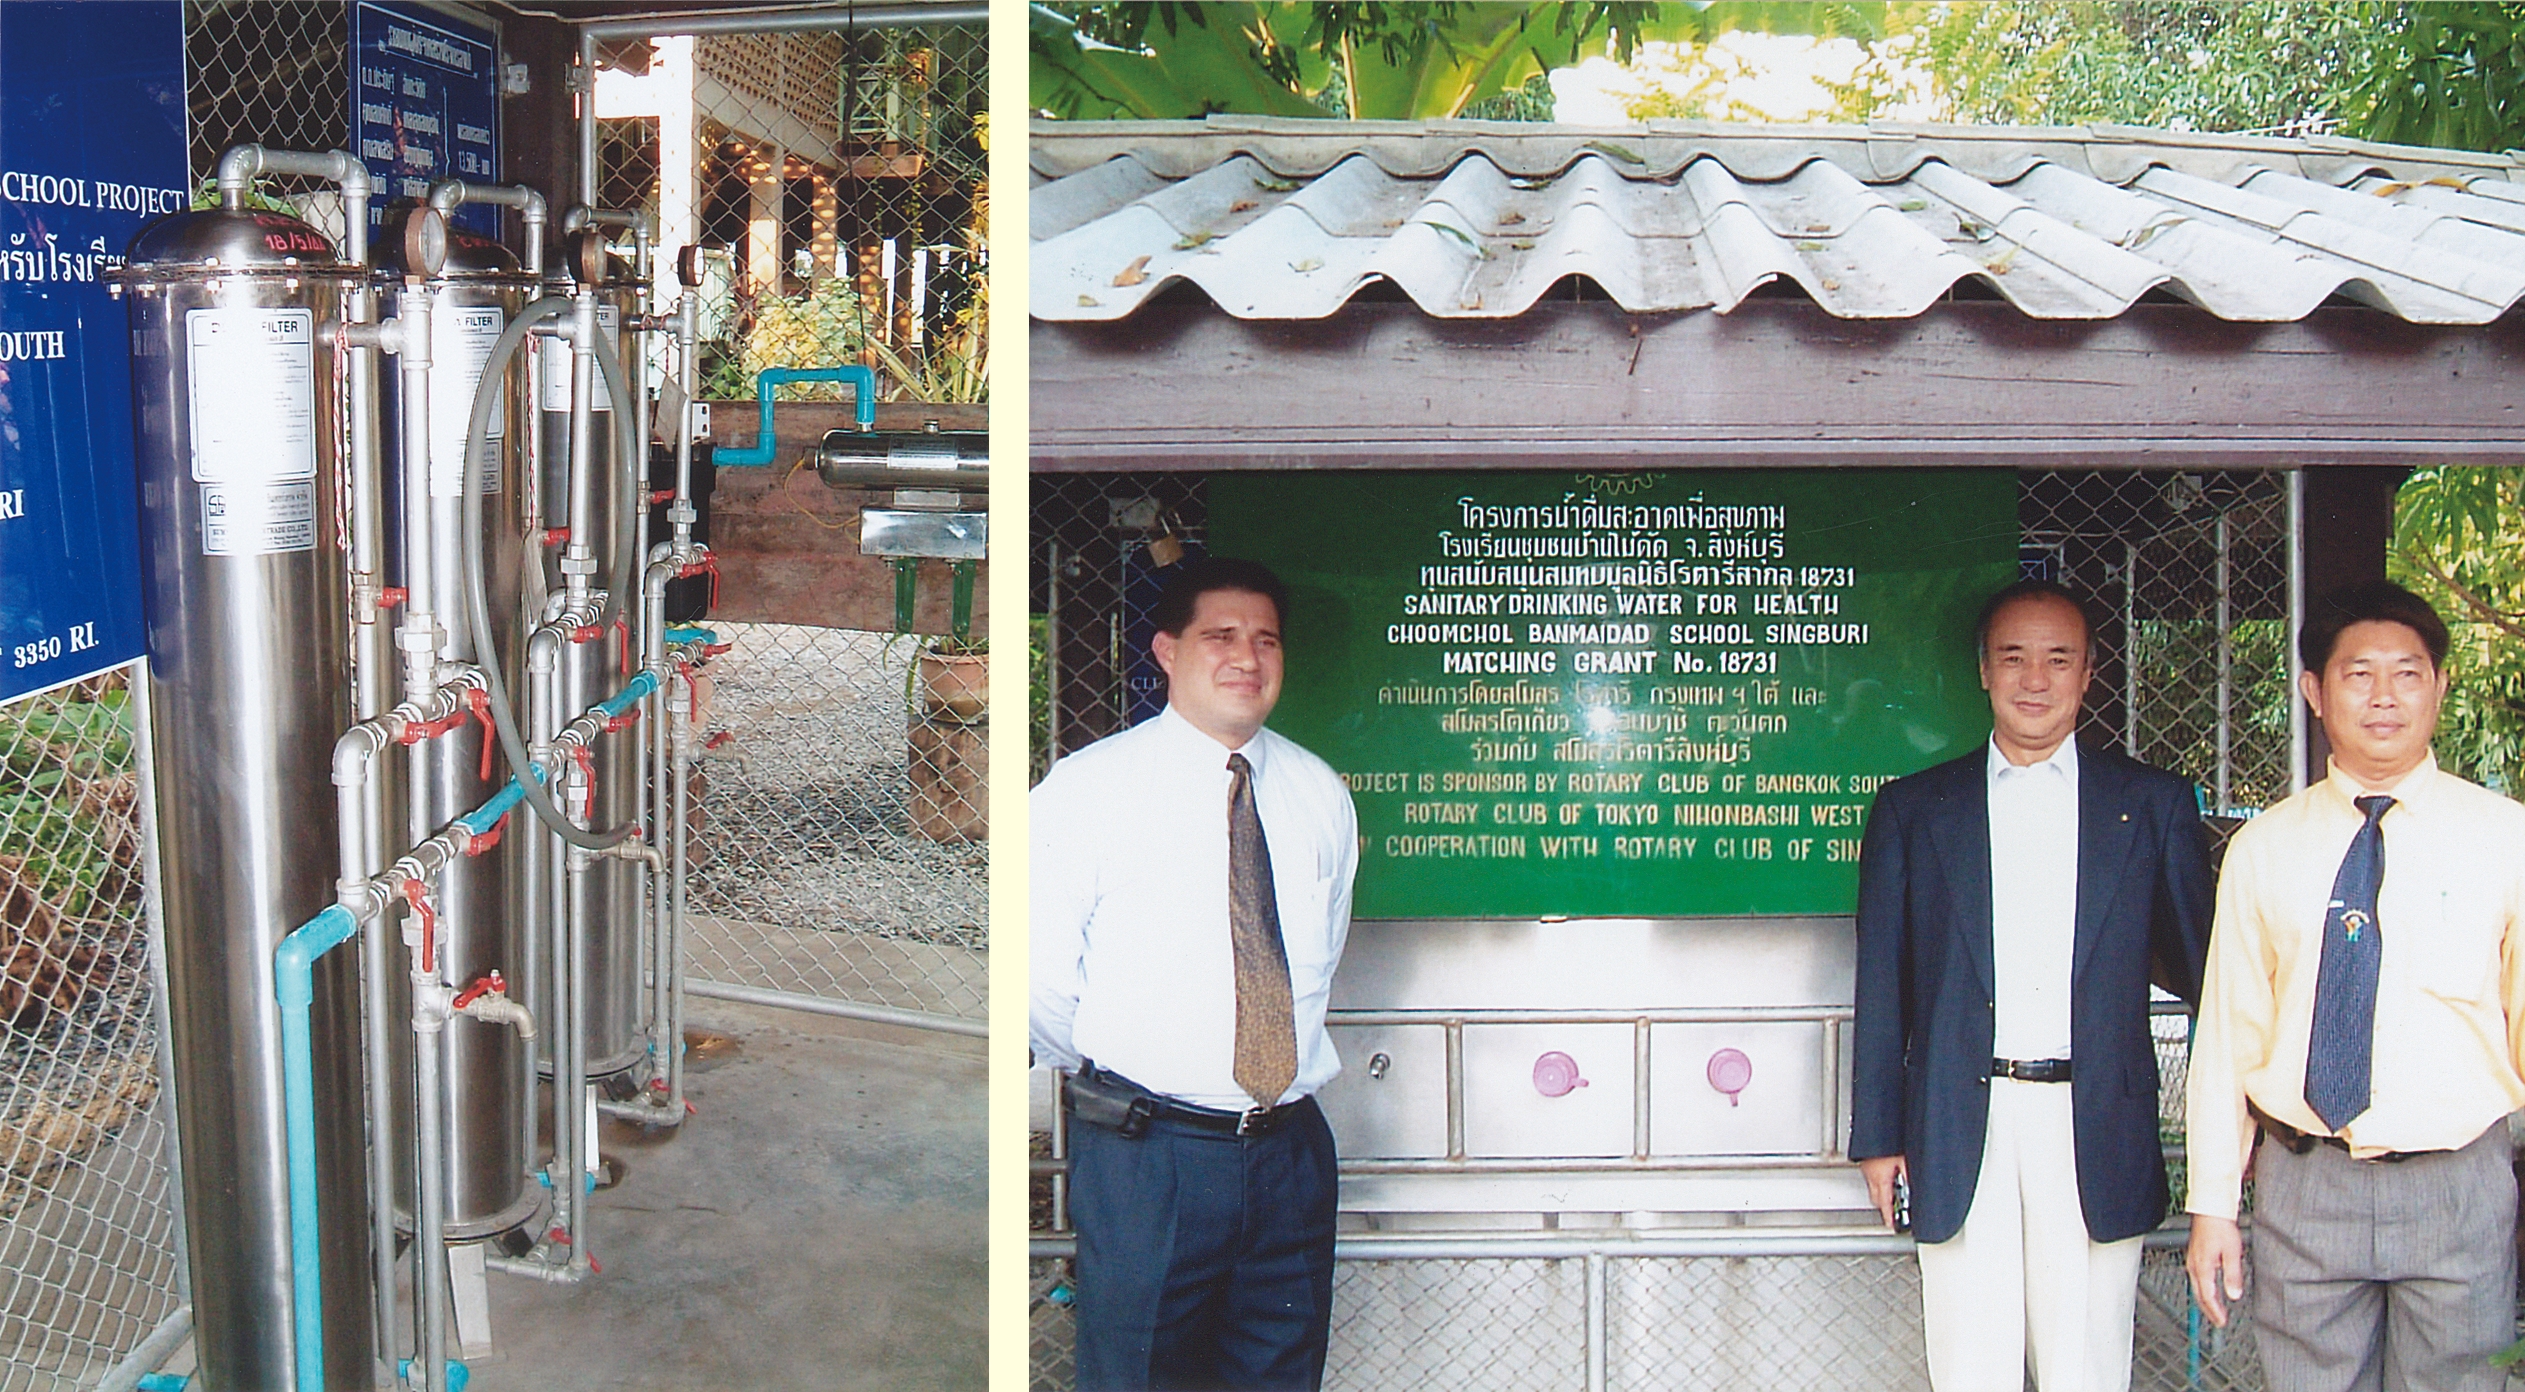 ロータリー財団プロジェクトの一環とし、タイ国シンブリ地区の小学校に飲料水浄化装置を寄贈